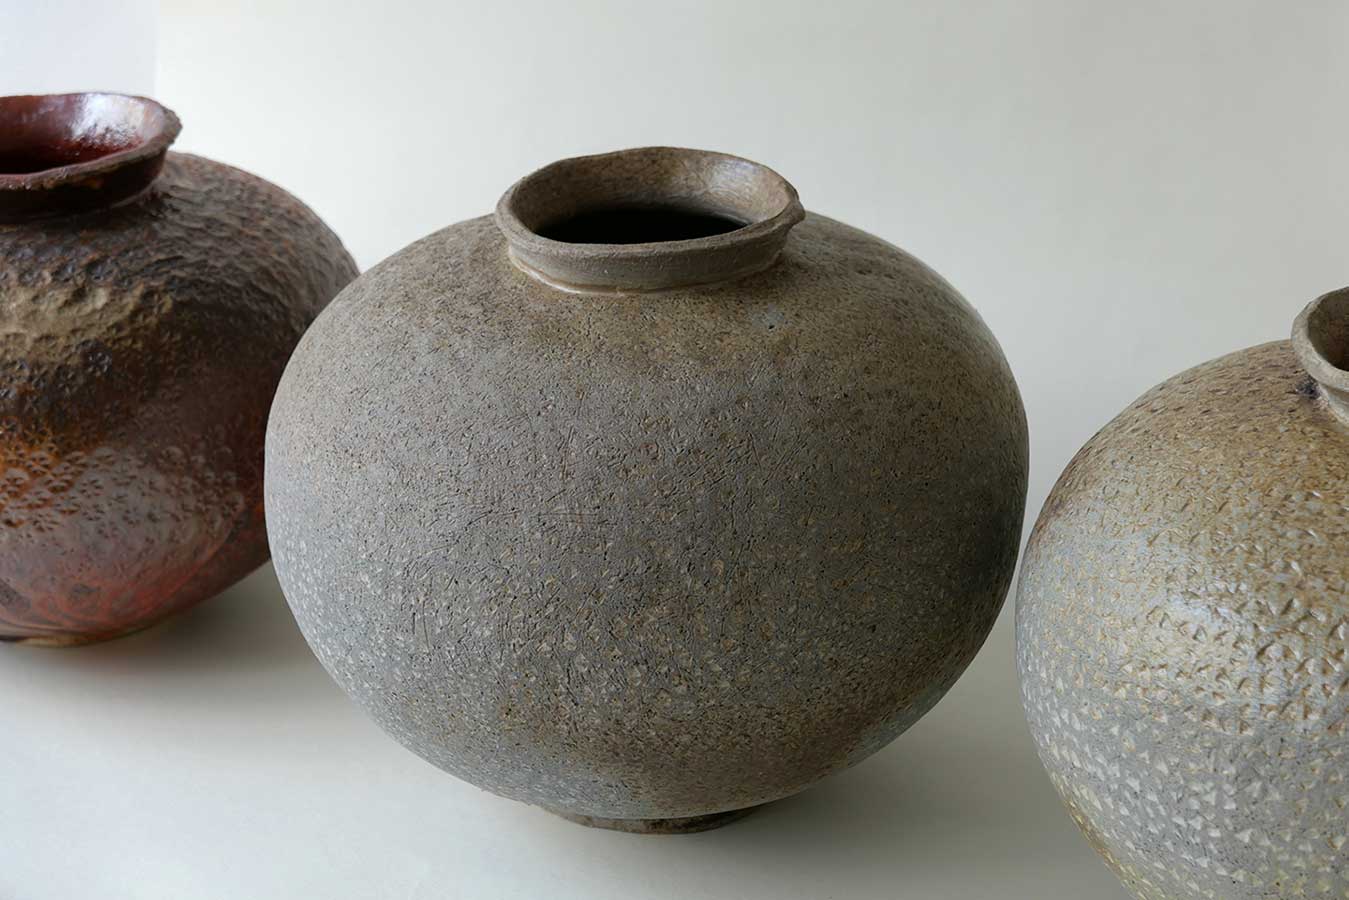 Vase aus der Serie ´Slow down`, 2022, Steinzeug, aufgebaut, H 31 cm / ∅ 33 cm, Holzbrand 1300°C